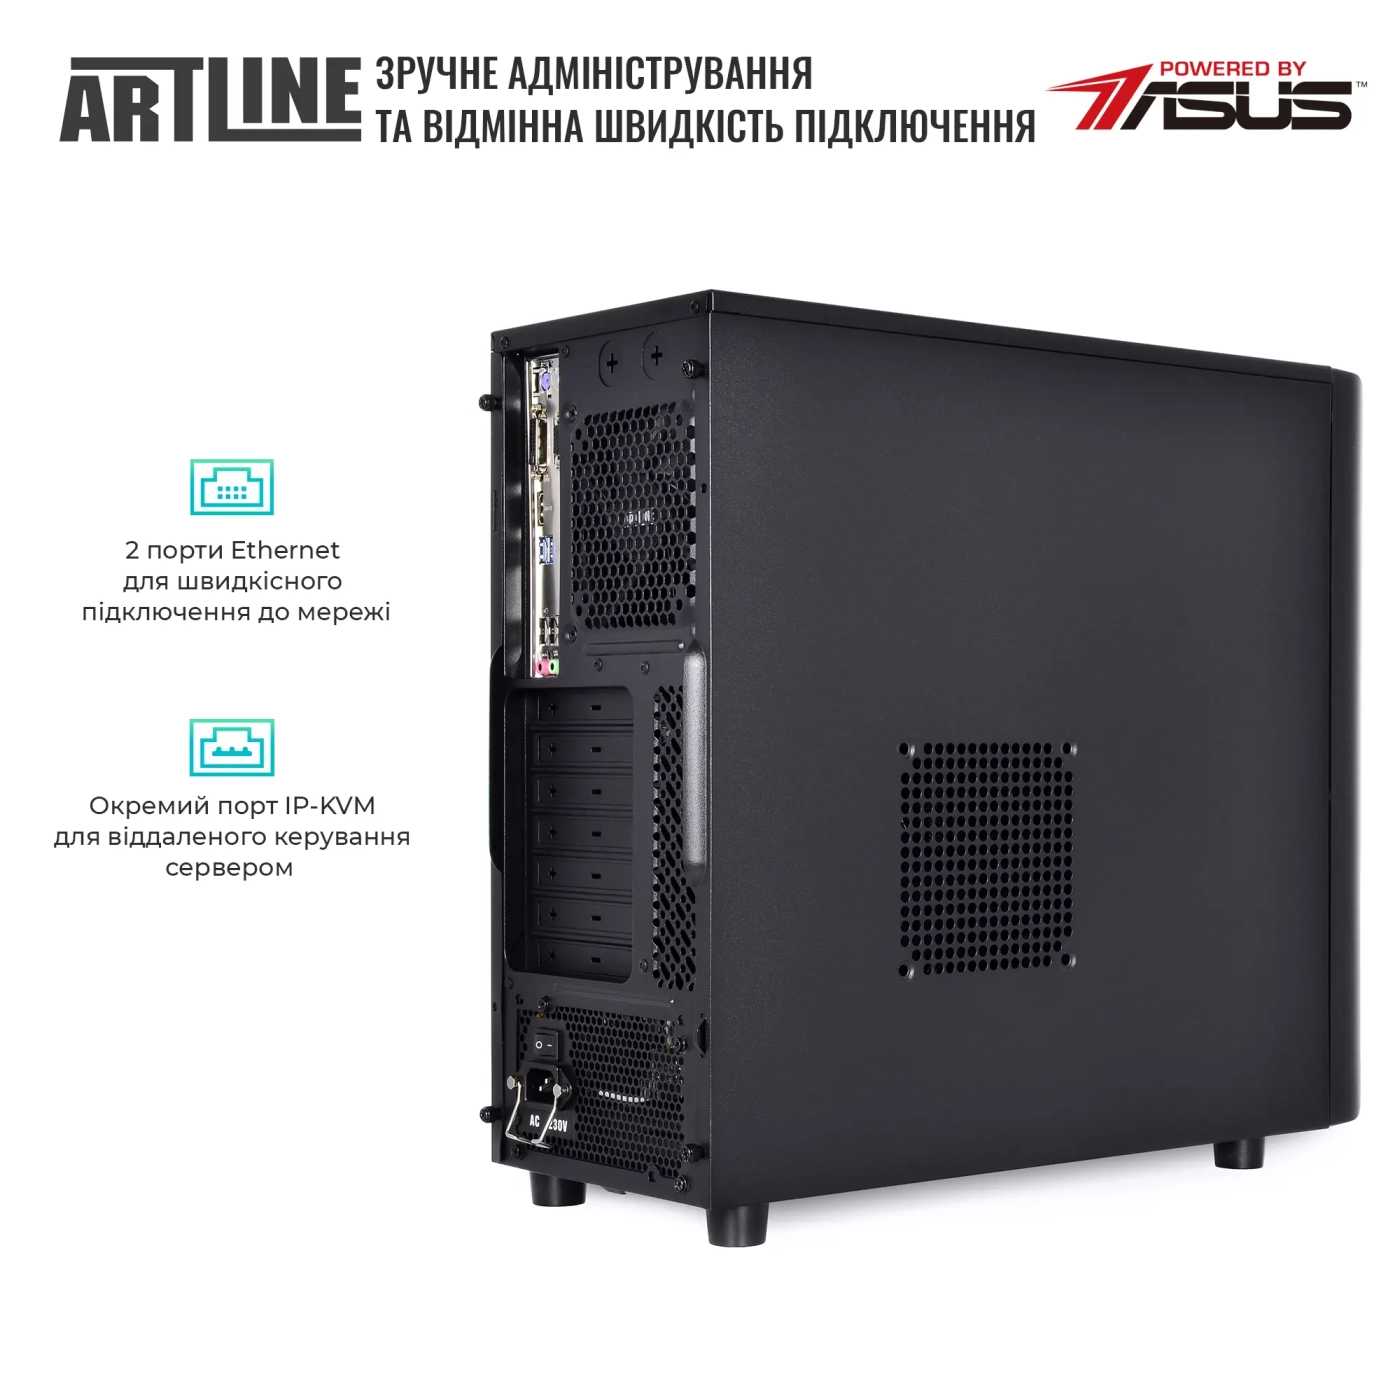 Купить Сервер ARTLINE Business T35 (T35v33) - фото 5